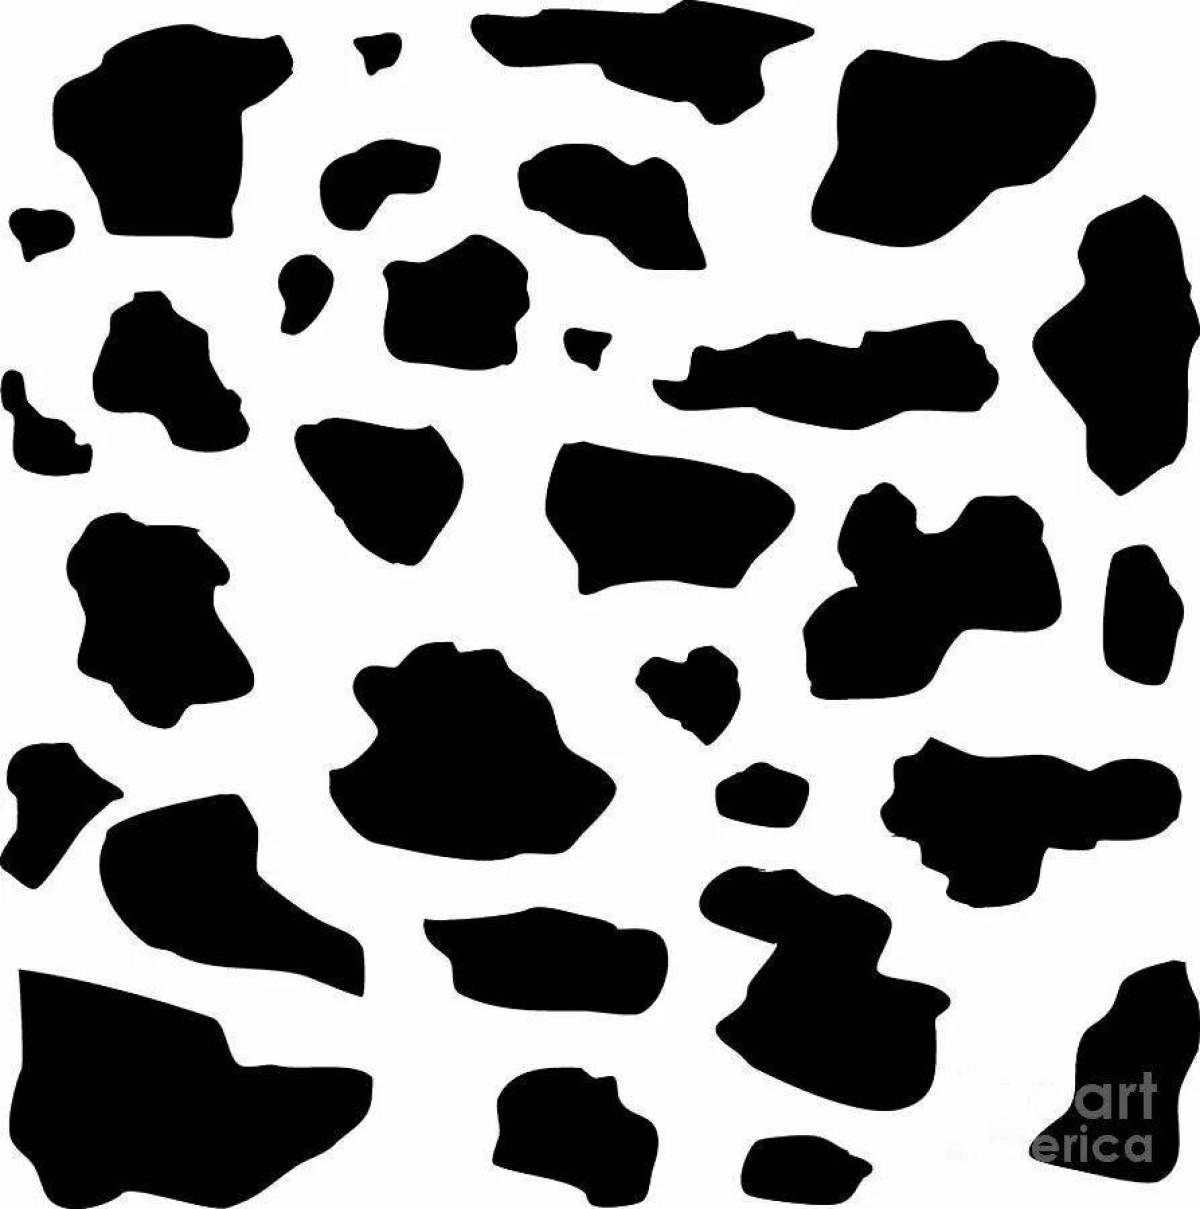 Раскраска с игривым принтом коровы